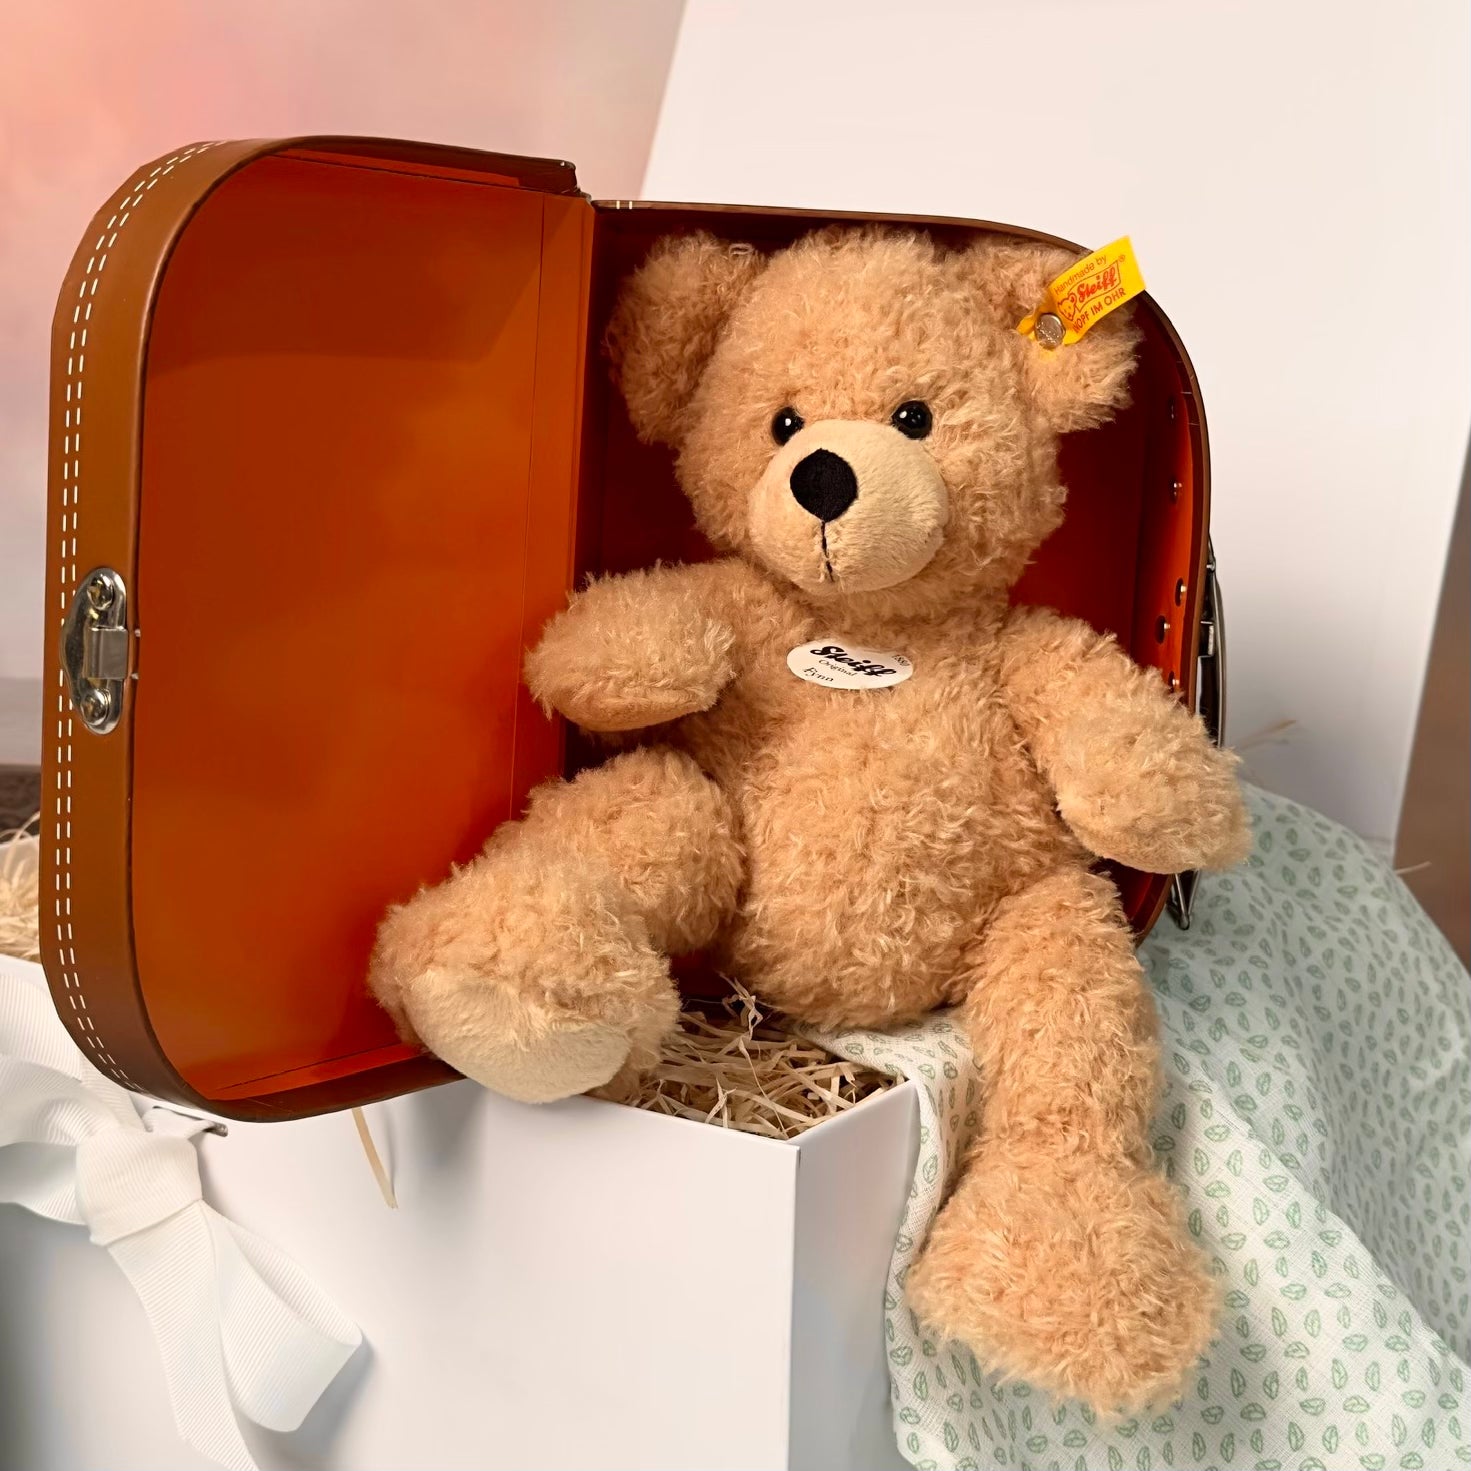 Steiff Soft Cuddly Friends Fynn Teddy bear in suitcase